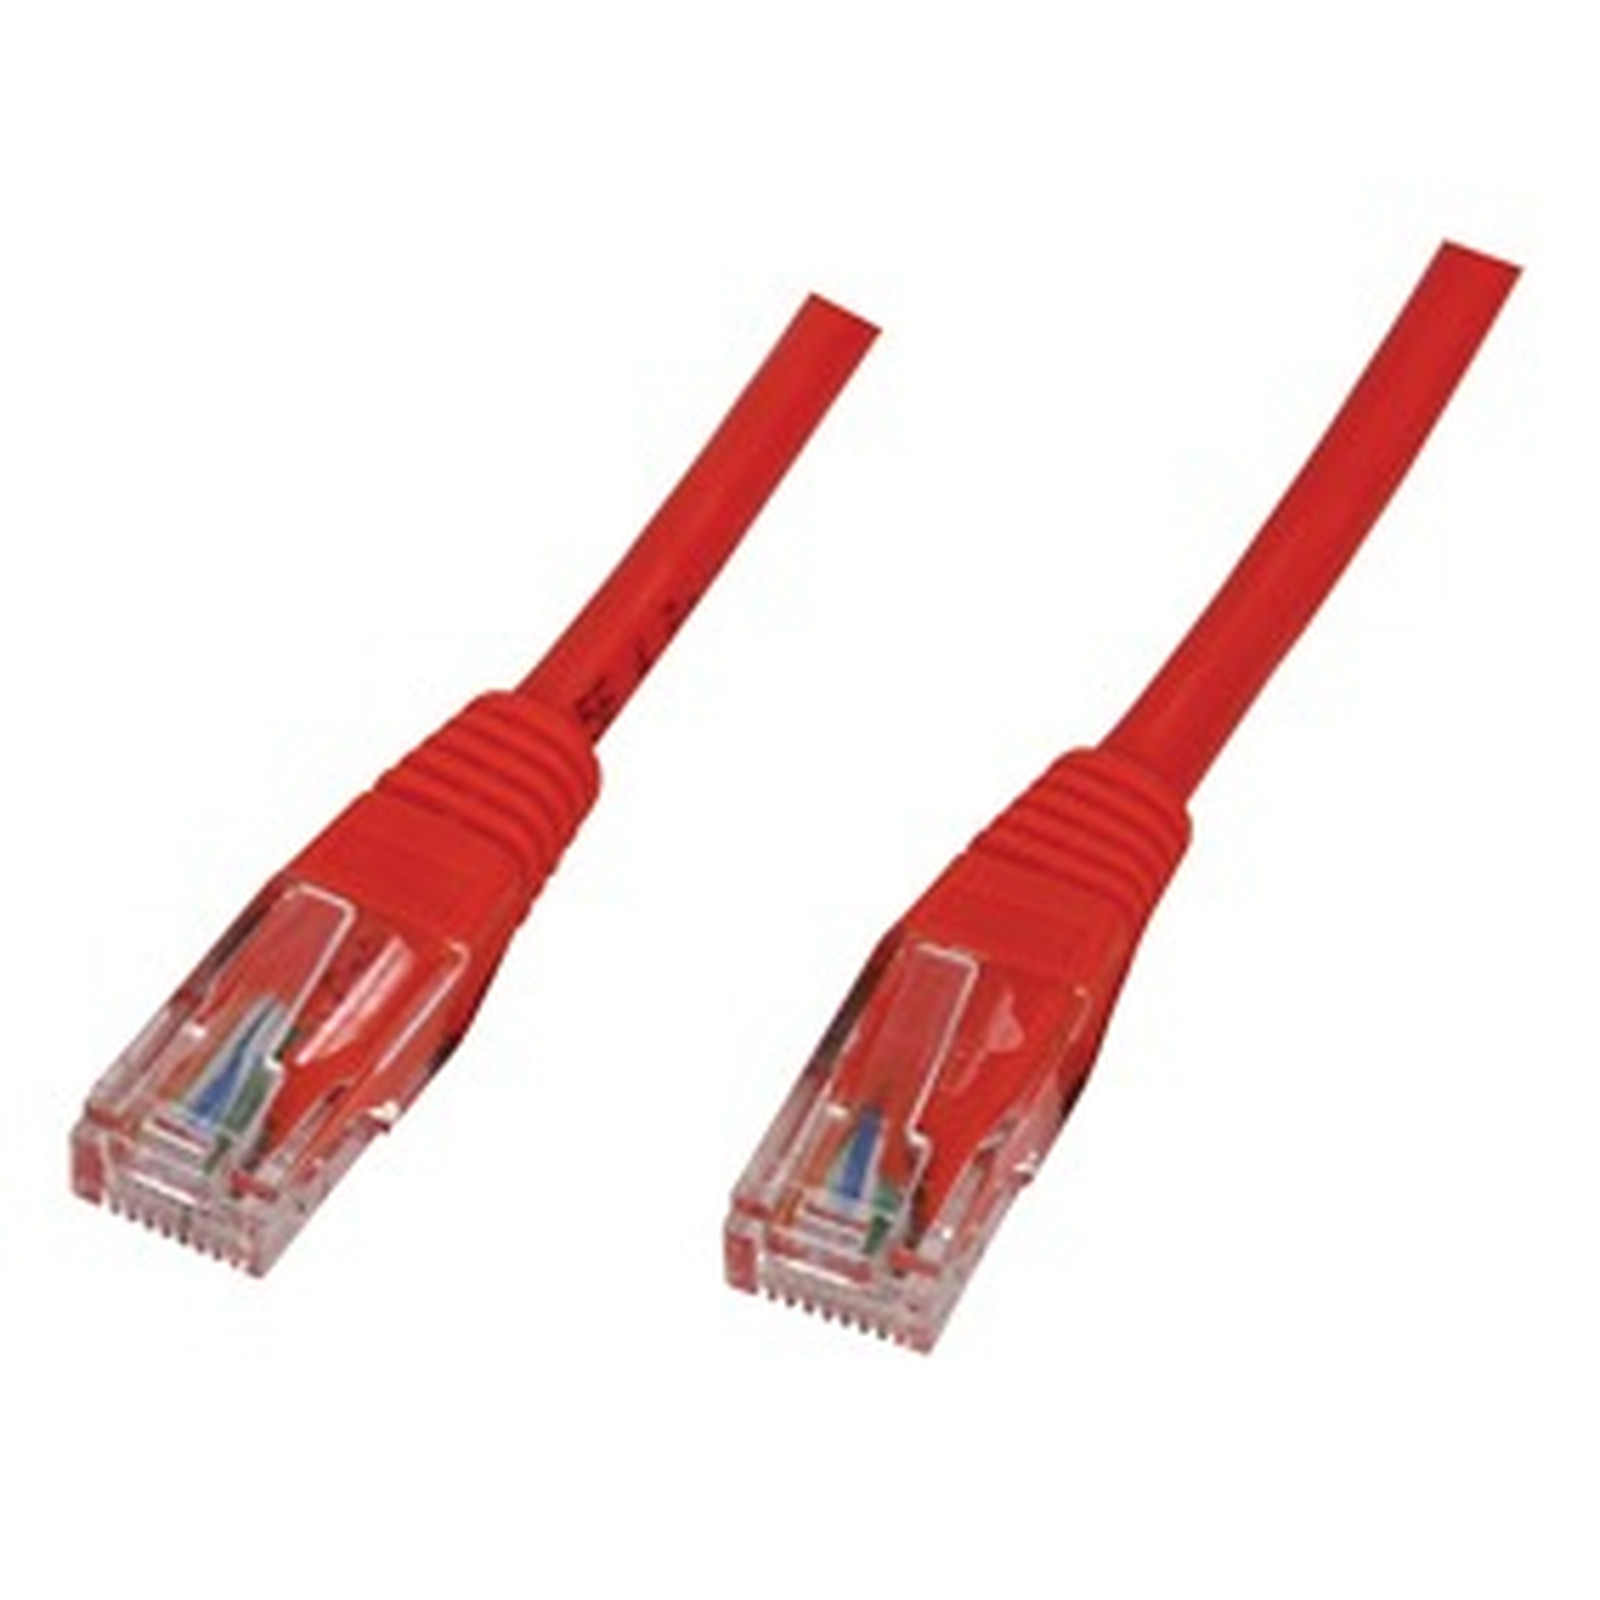 Cable RJ45 categorie 5e U/UTP 3 m (Rouge) - Cable RJ45 Generique